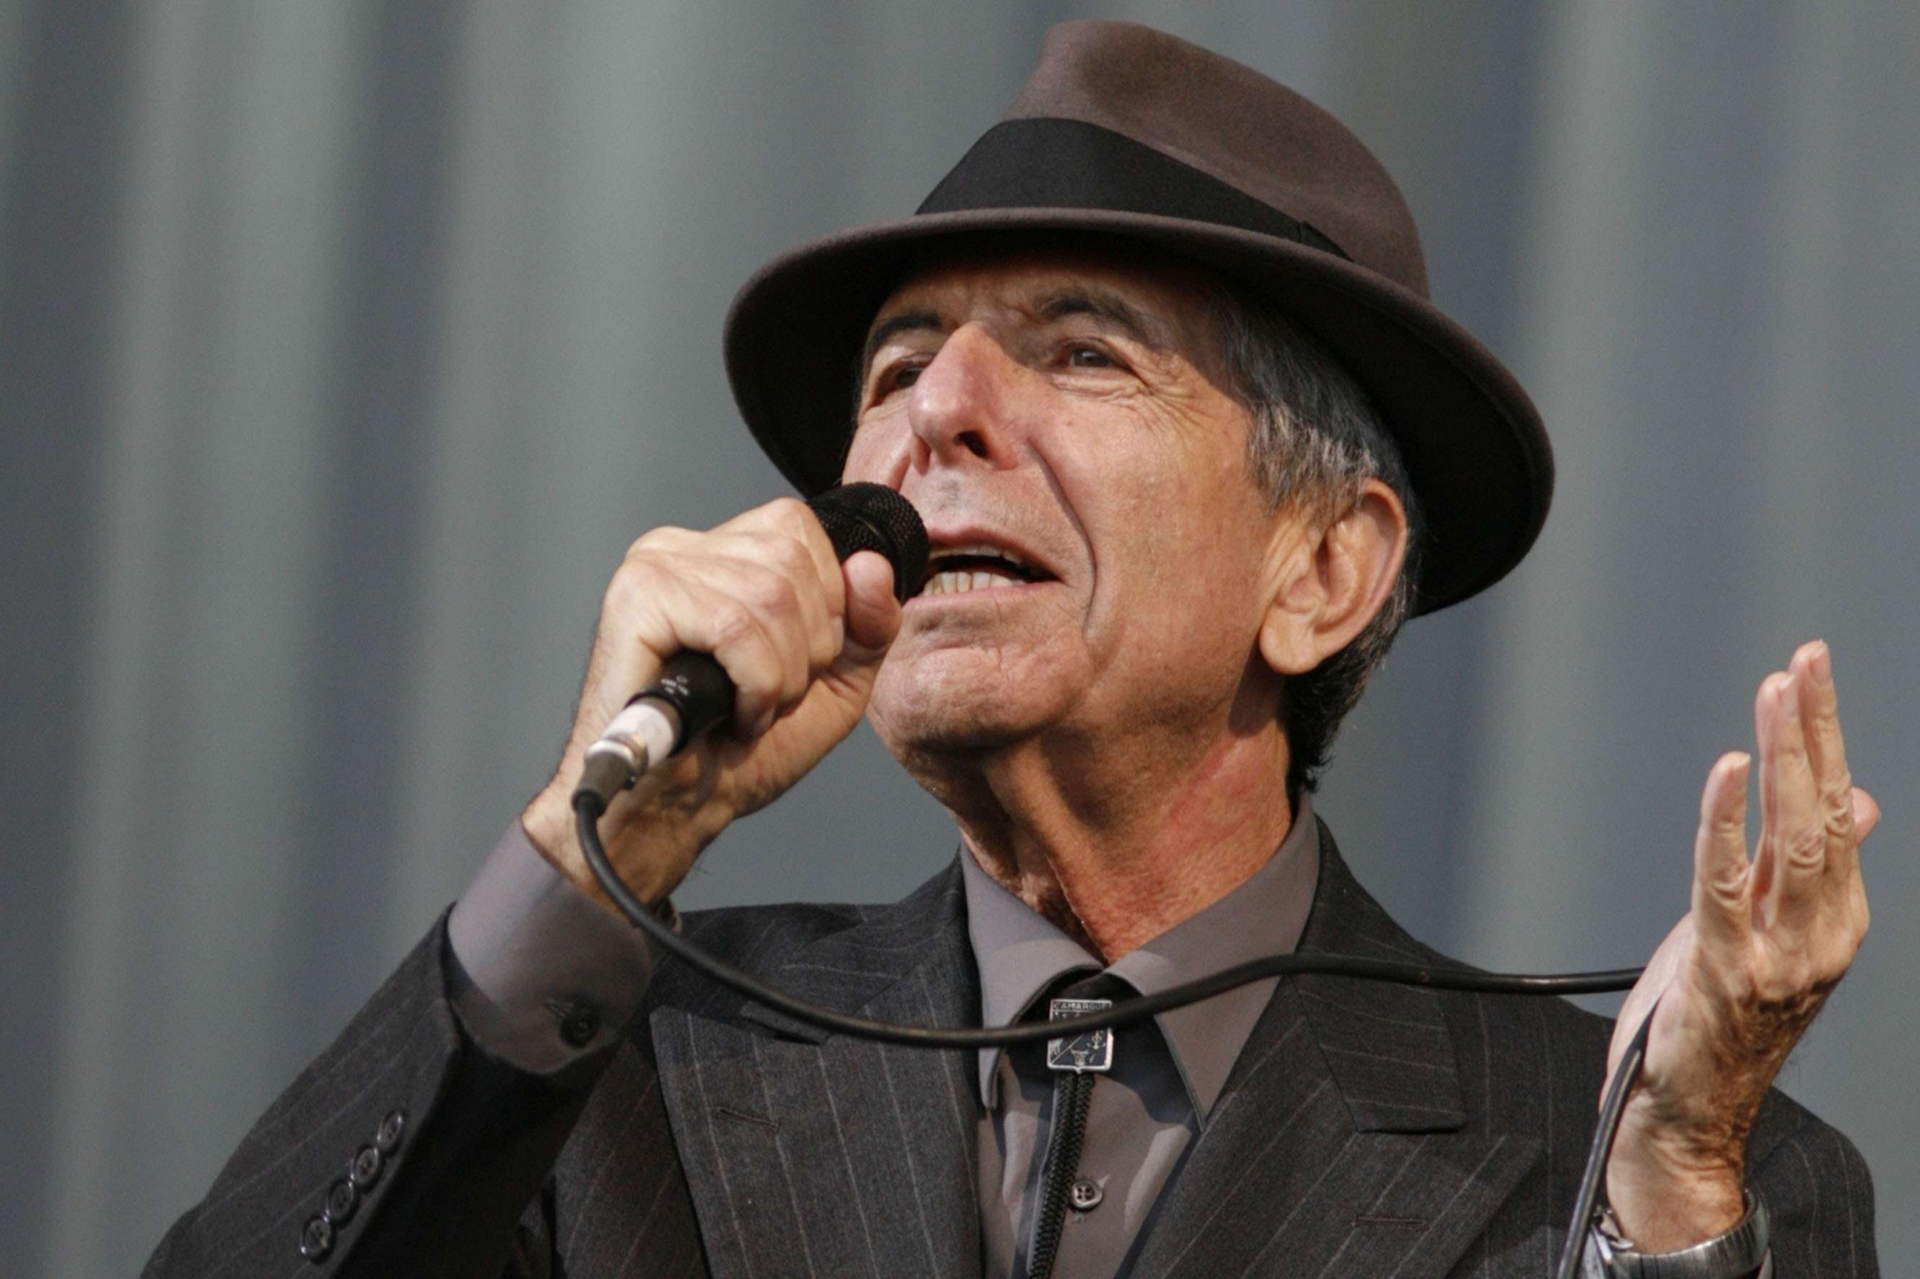 Addio a Leonard Cohen, maestro della poesia e della preghiera in musica